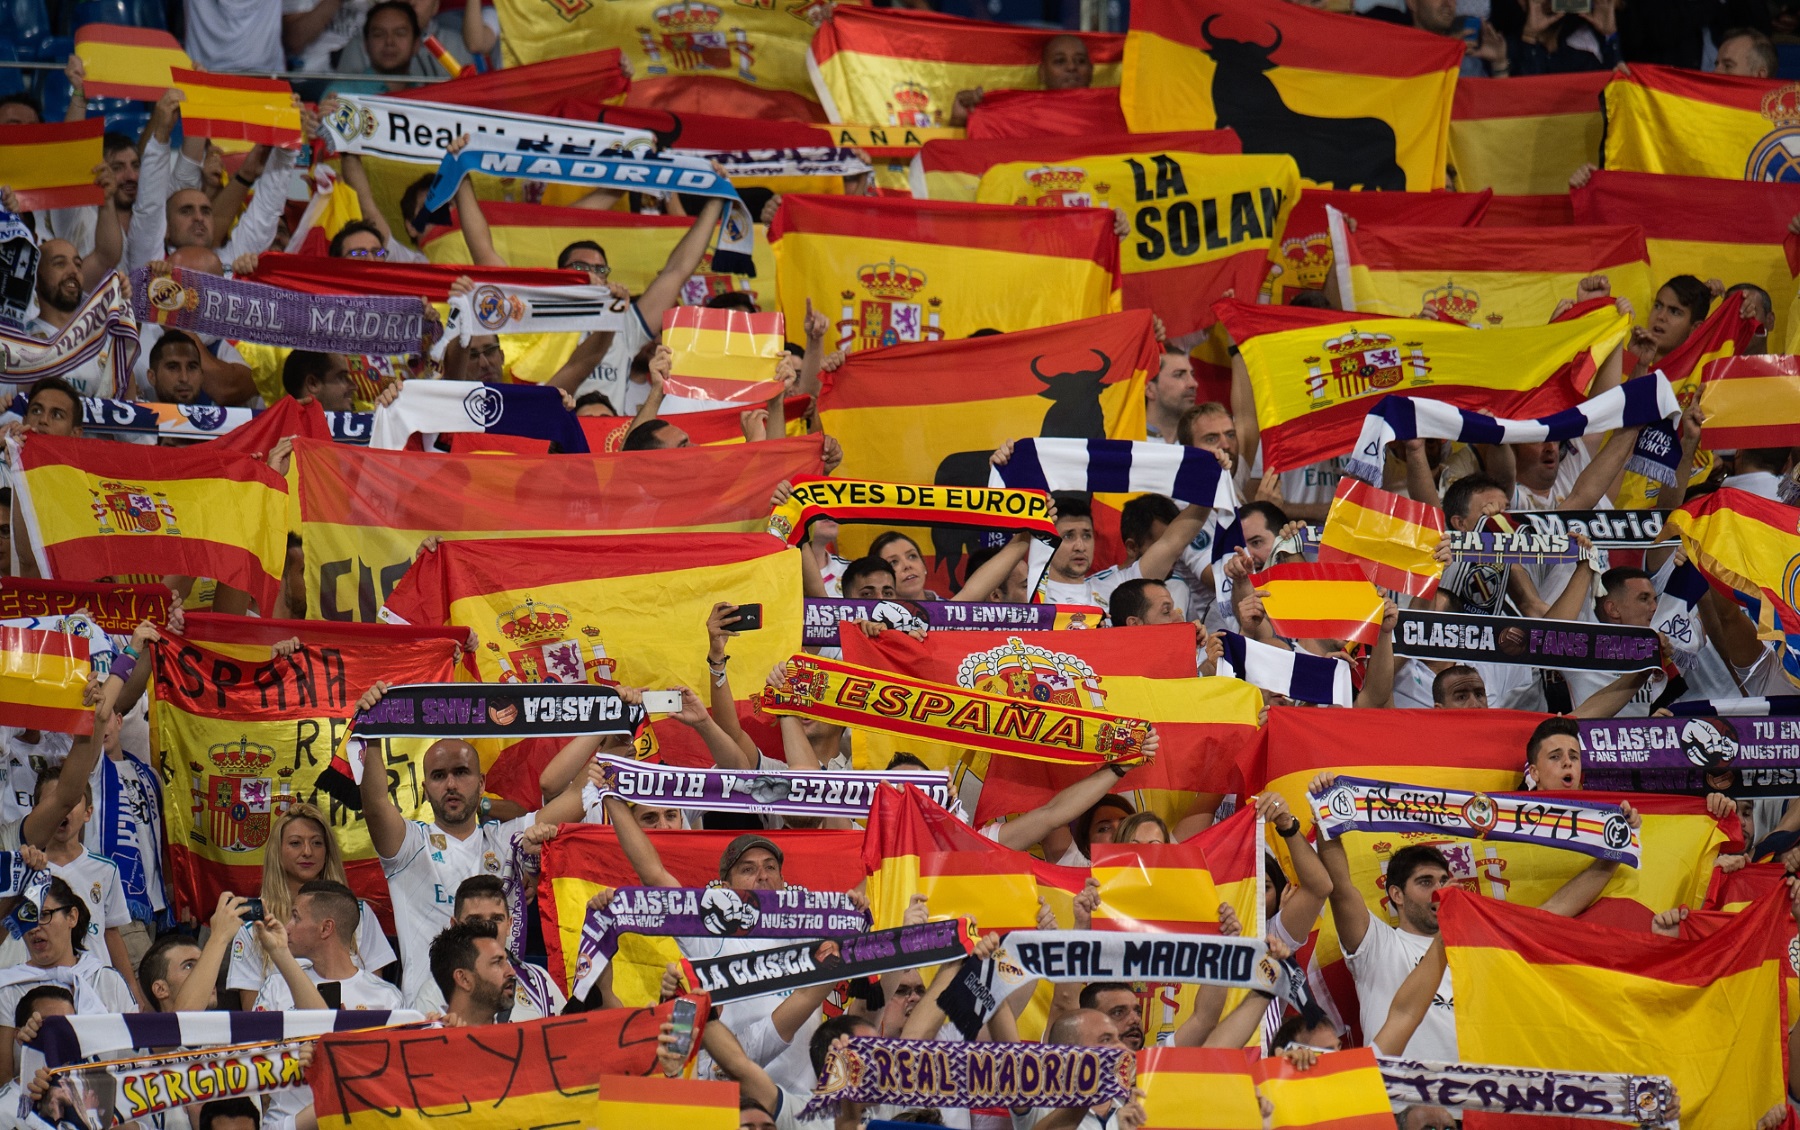 Real Madrid, Španělsko, fanoušci. Foto: GETTY IMAGES